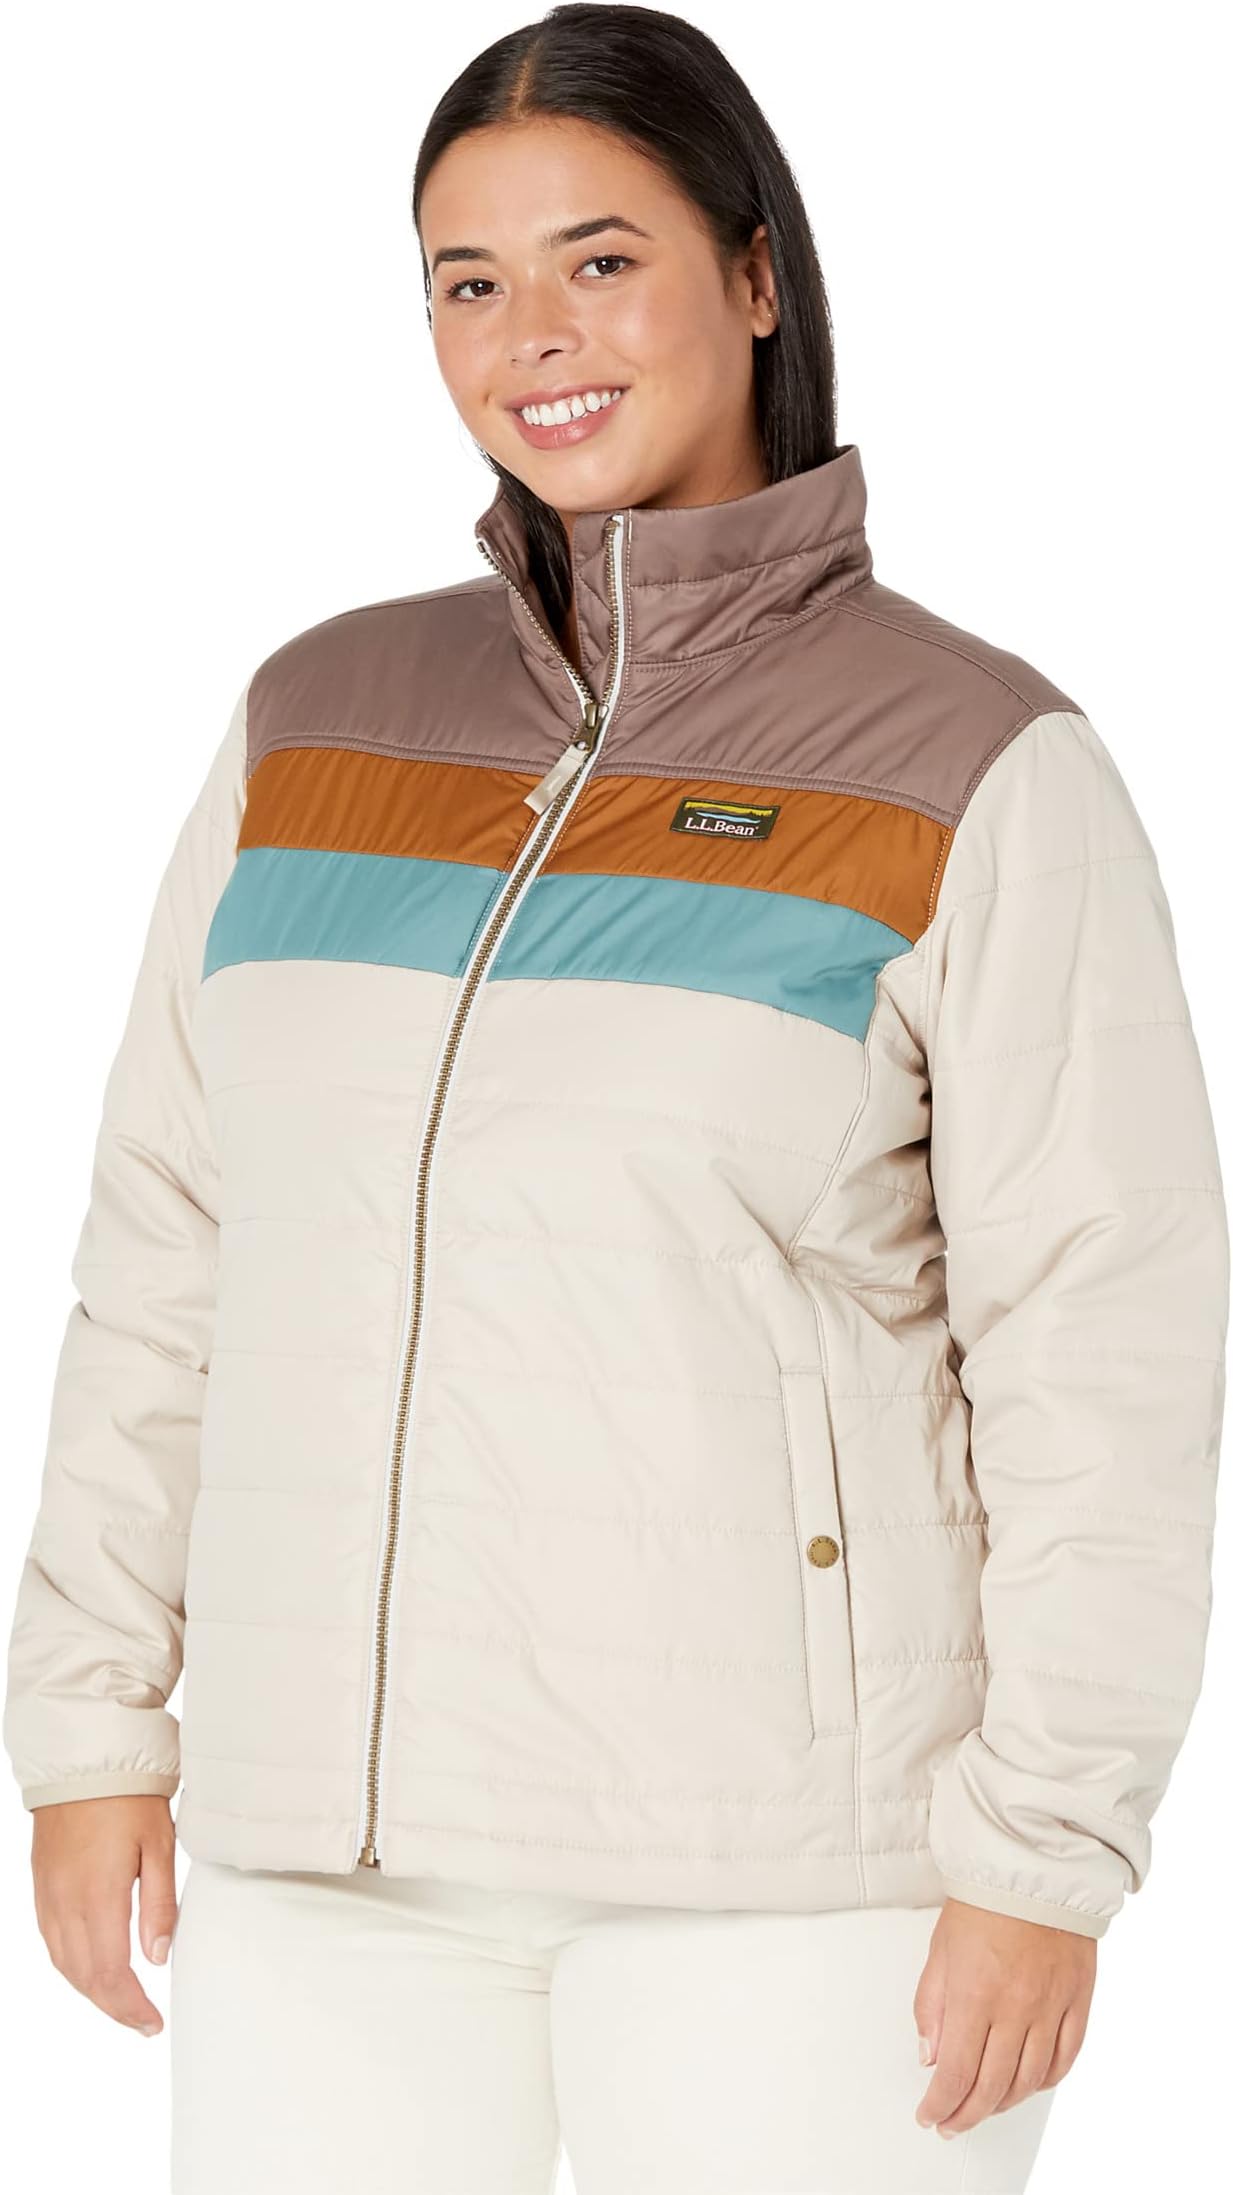 Классическая куртка-пуховик Mountain больших размеров в стиле колор-блок L.L.Bean, цвет Taupe Brown/Gray Birch